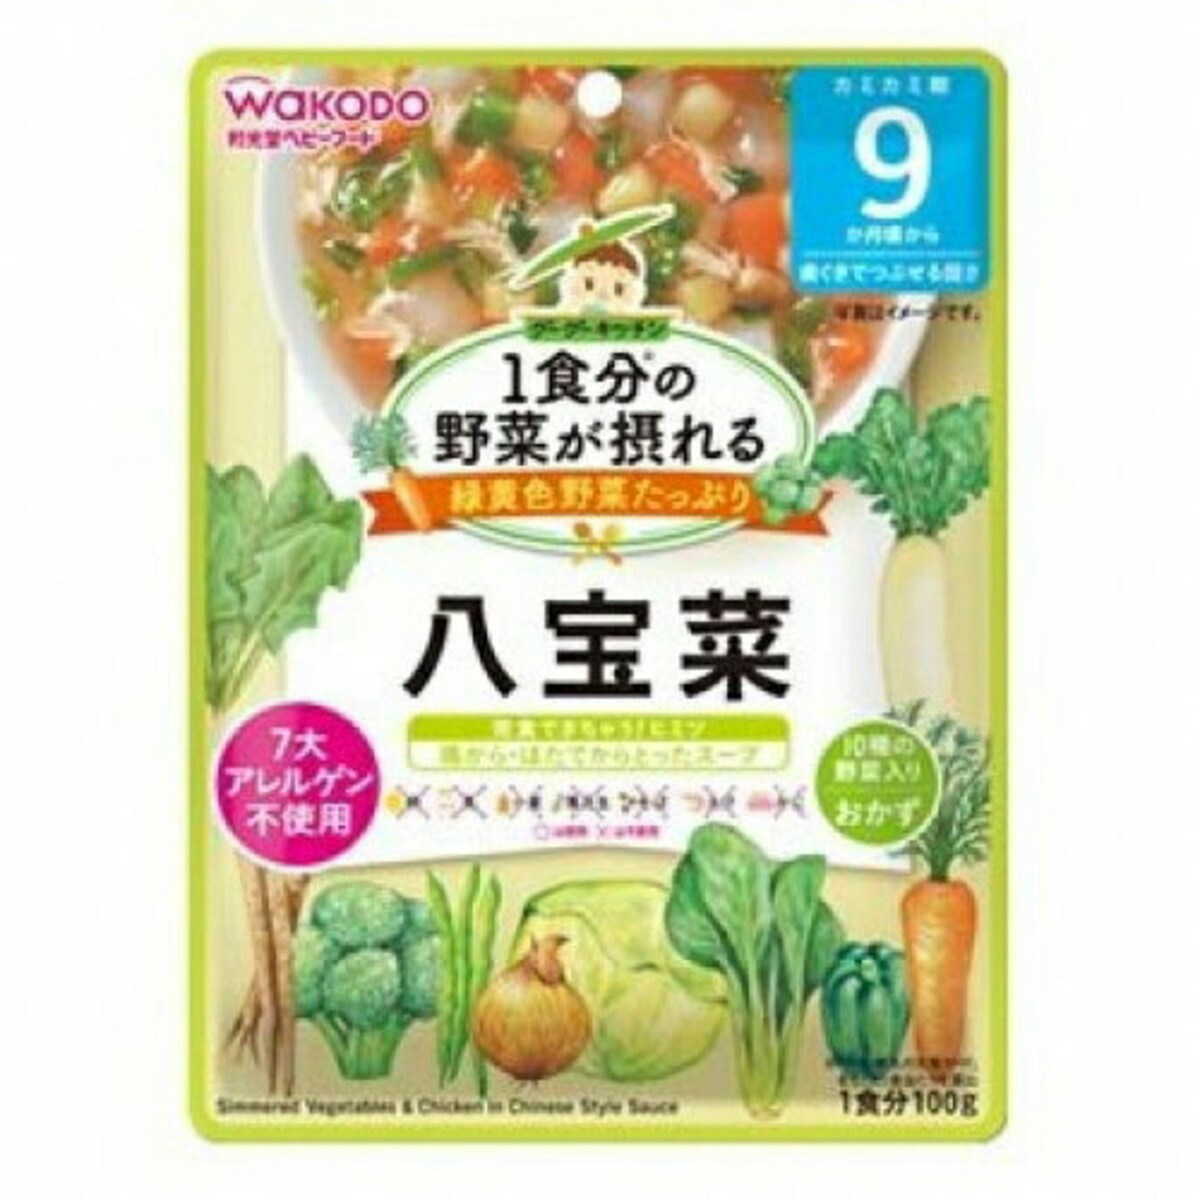 和光堂 1食分の野菜が摂れる「八宝菜」